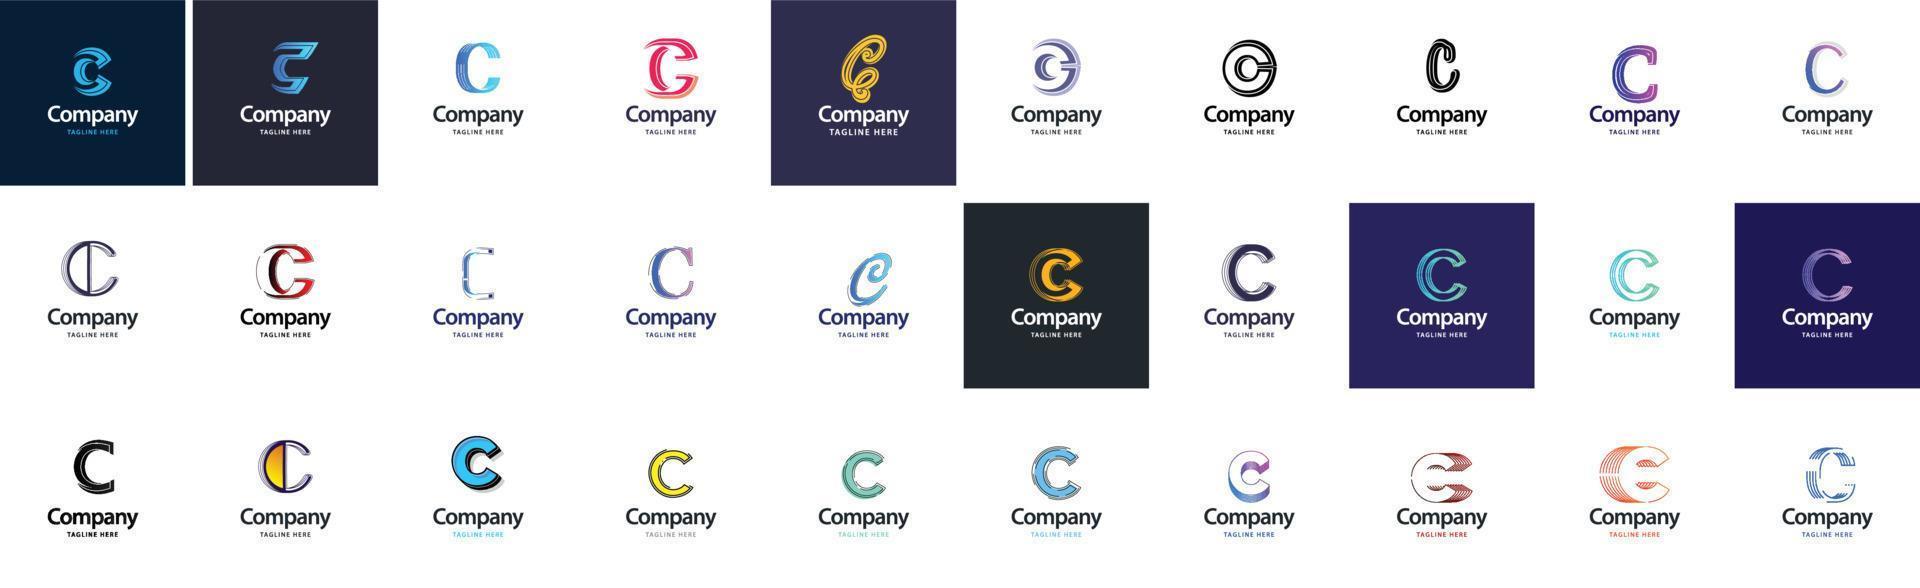 colección de logotipos c. 30 colecciones de logotipos comerciales para empresas financieras o agencias de diseño. ilustración de marca vectorial vector